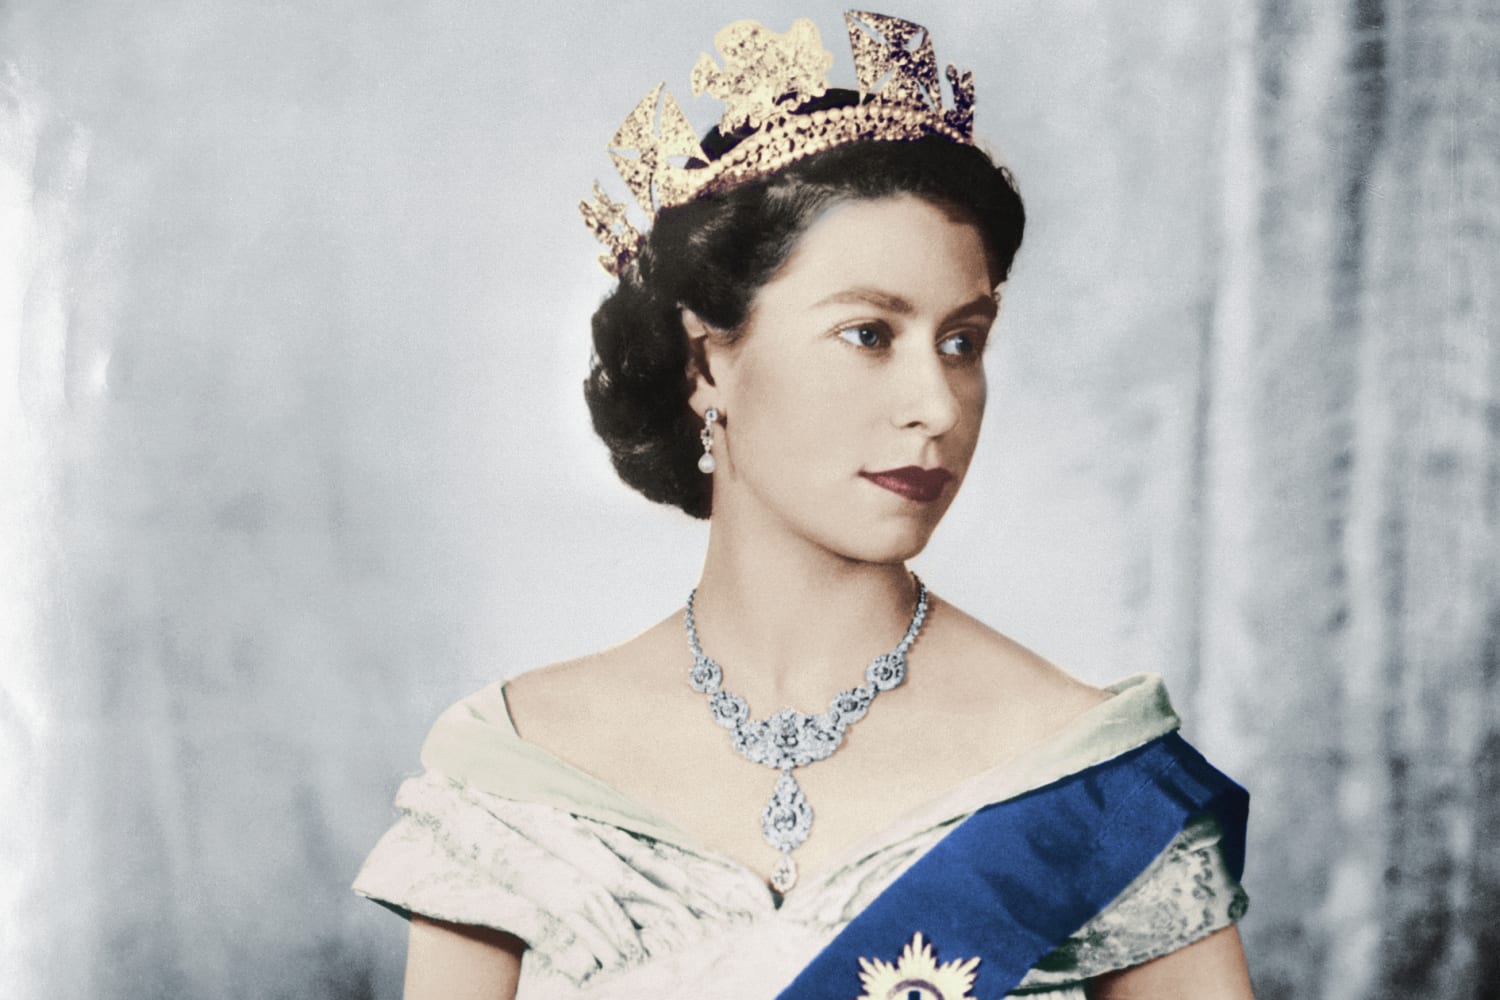 Queen Elizabeth II is the second-longest reigning monarch in